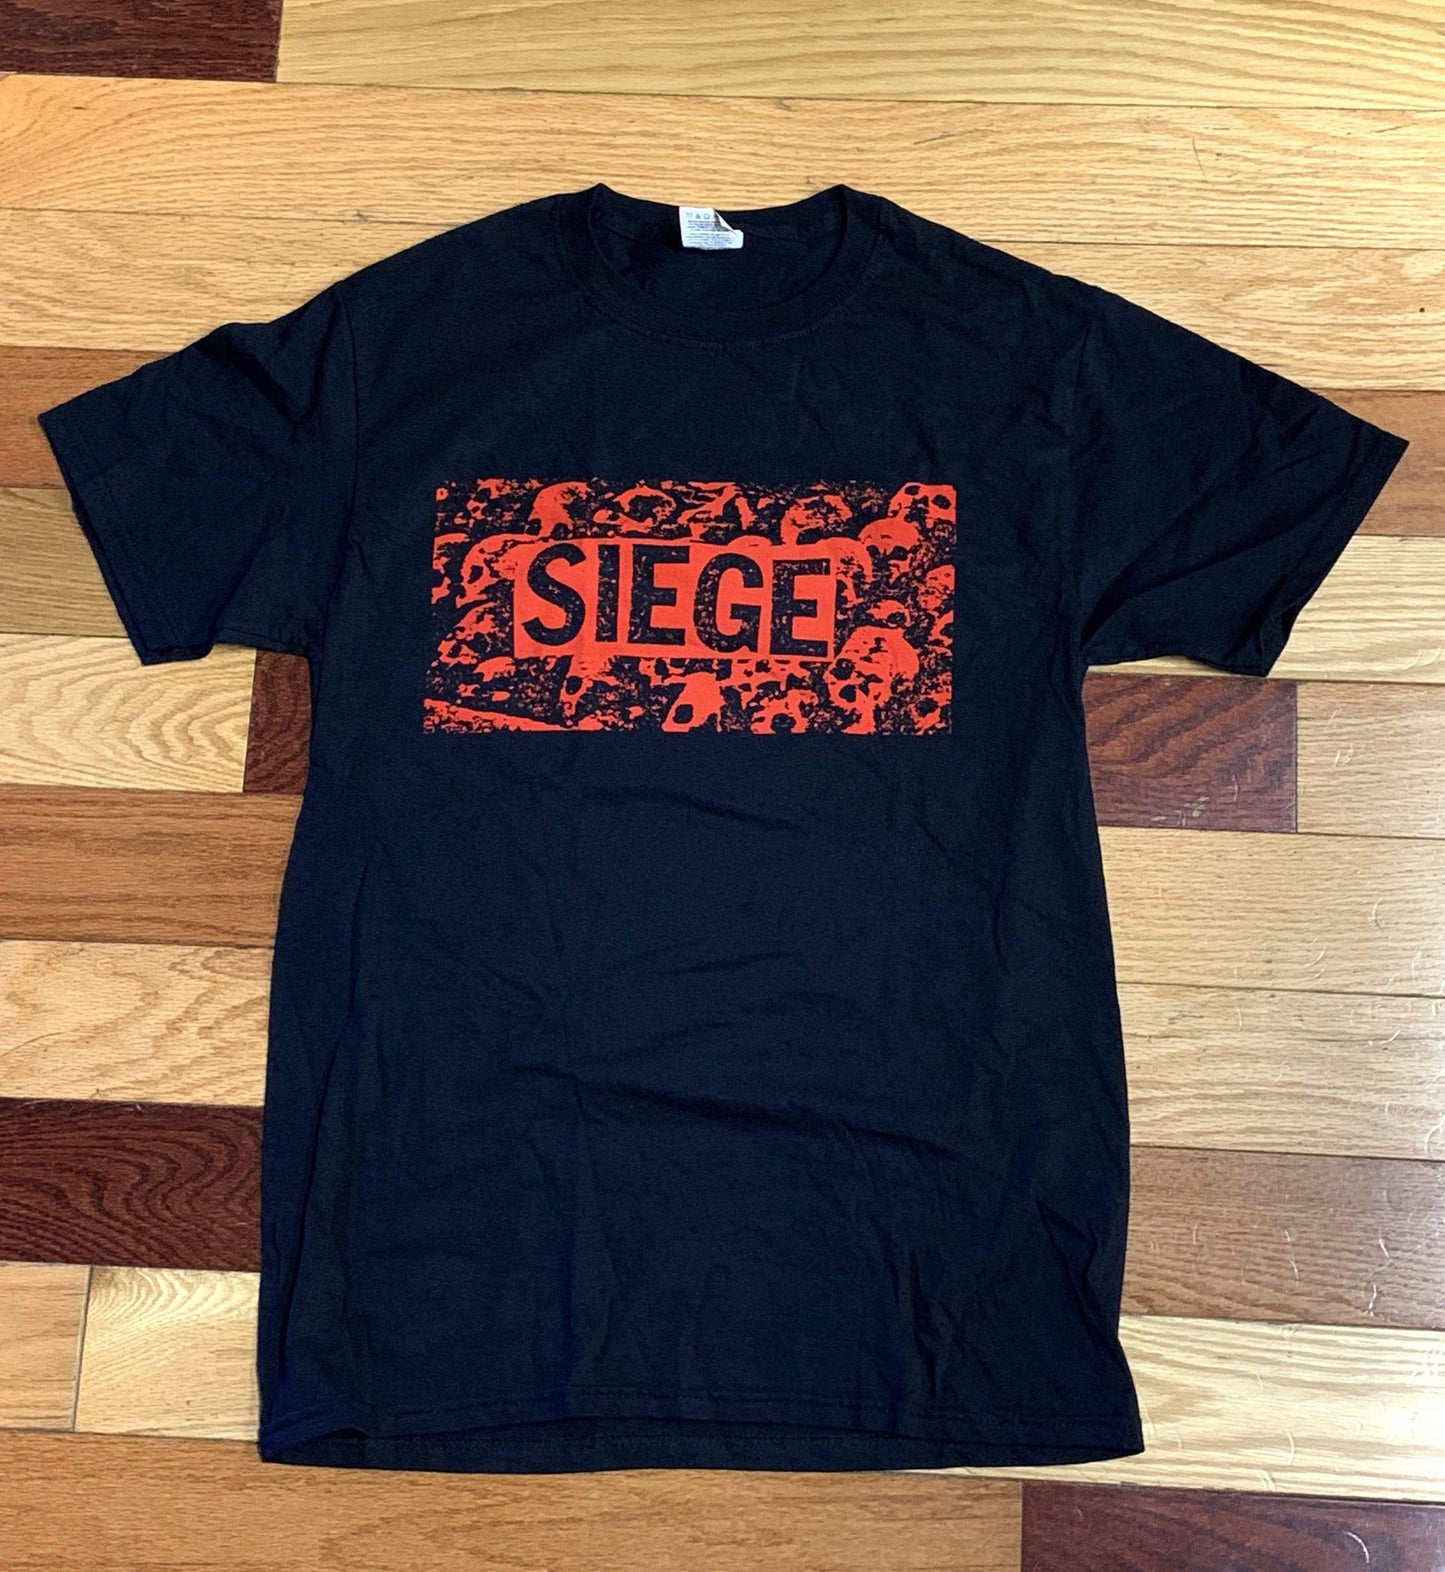 SIEGE T-shirt : Sad But True